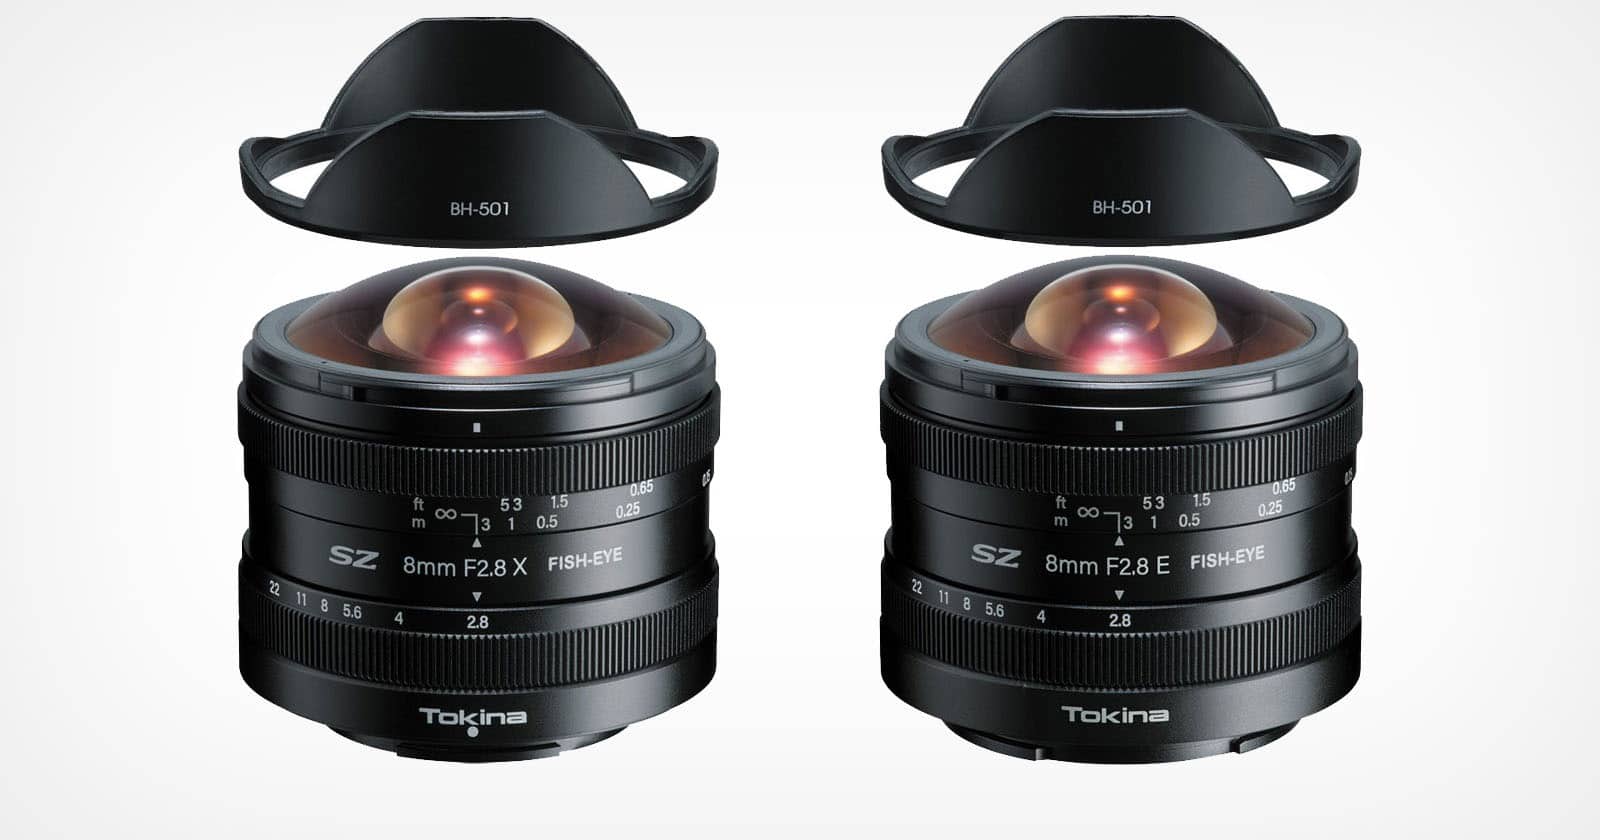 Tokina ra mắt ống kính SZ 8mm F2.8 Fisheye cho các máy ảnh Fujifilm ngàm X